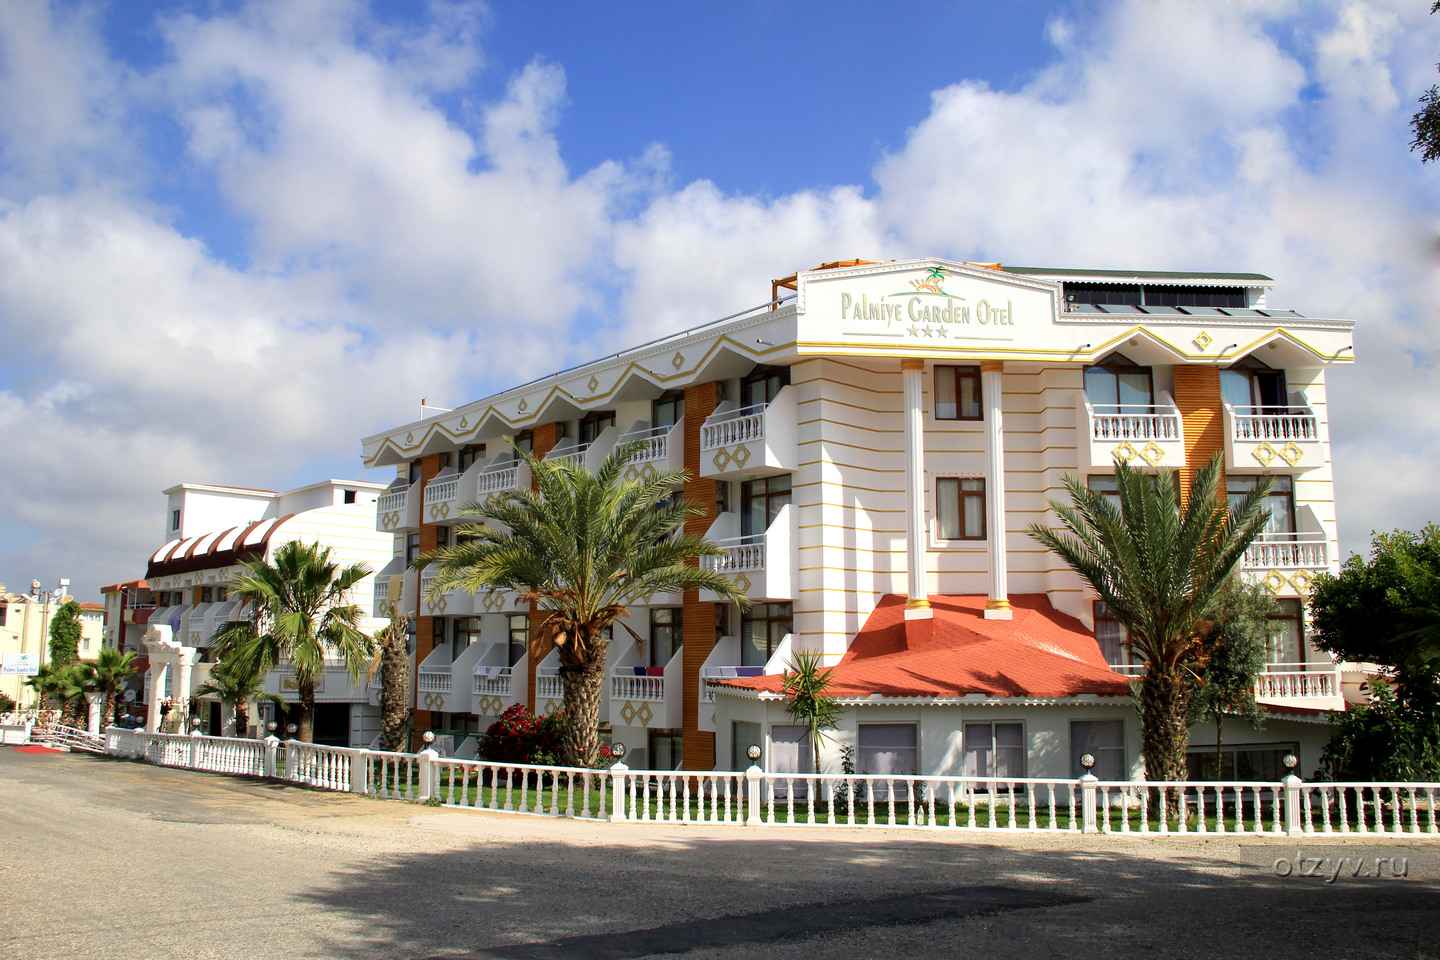 Akdora Resort Hotel & Spa